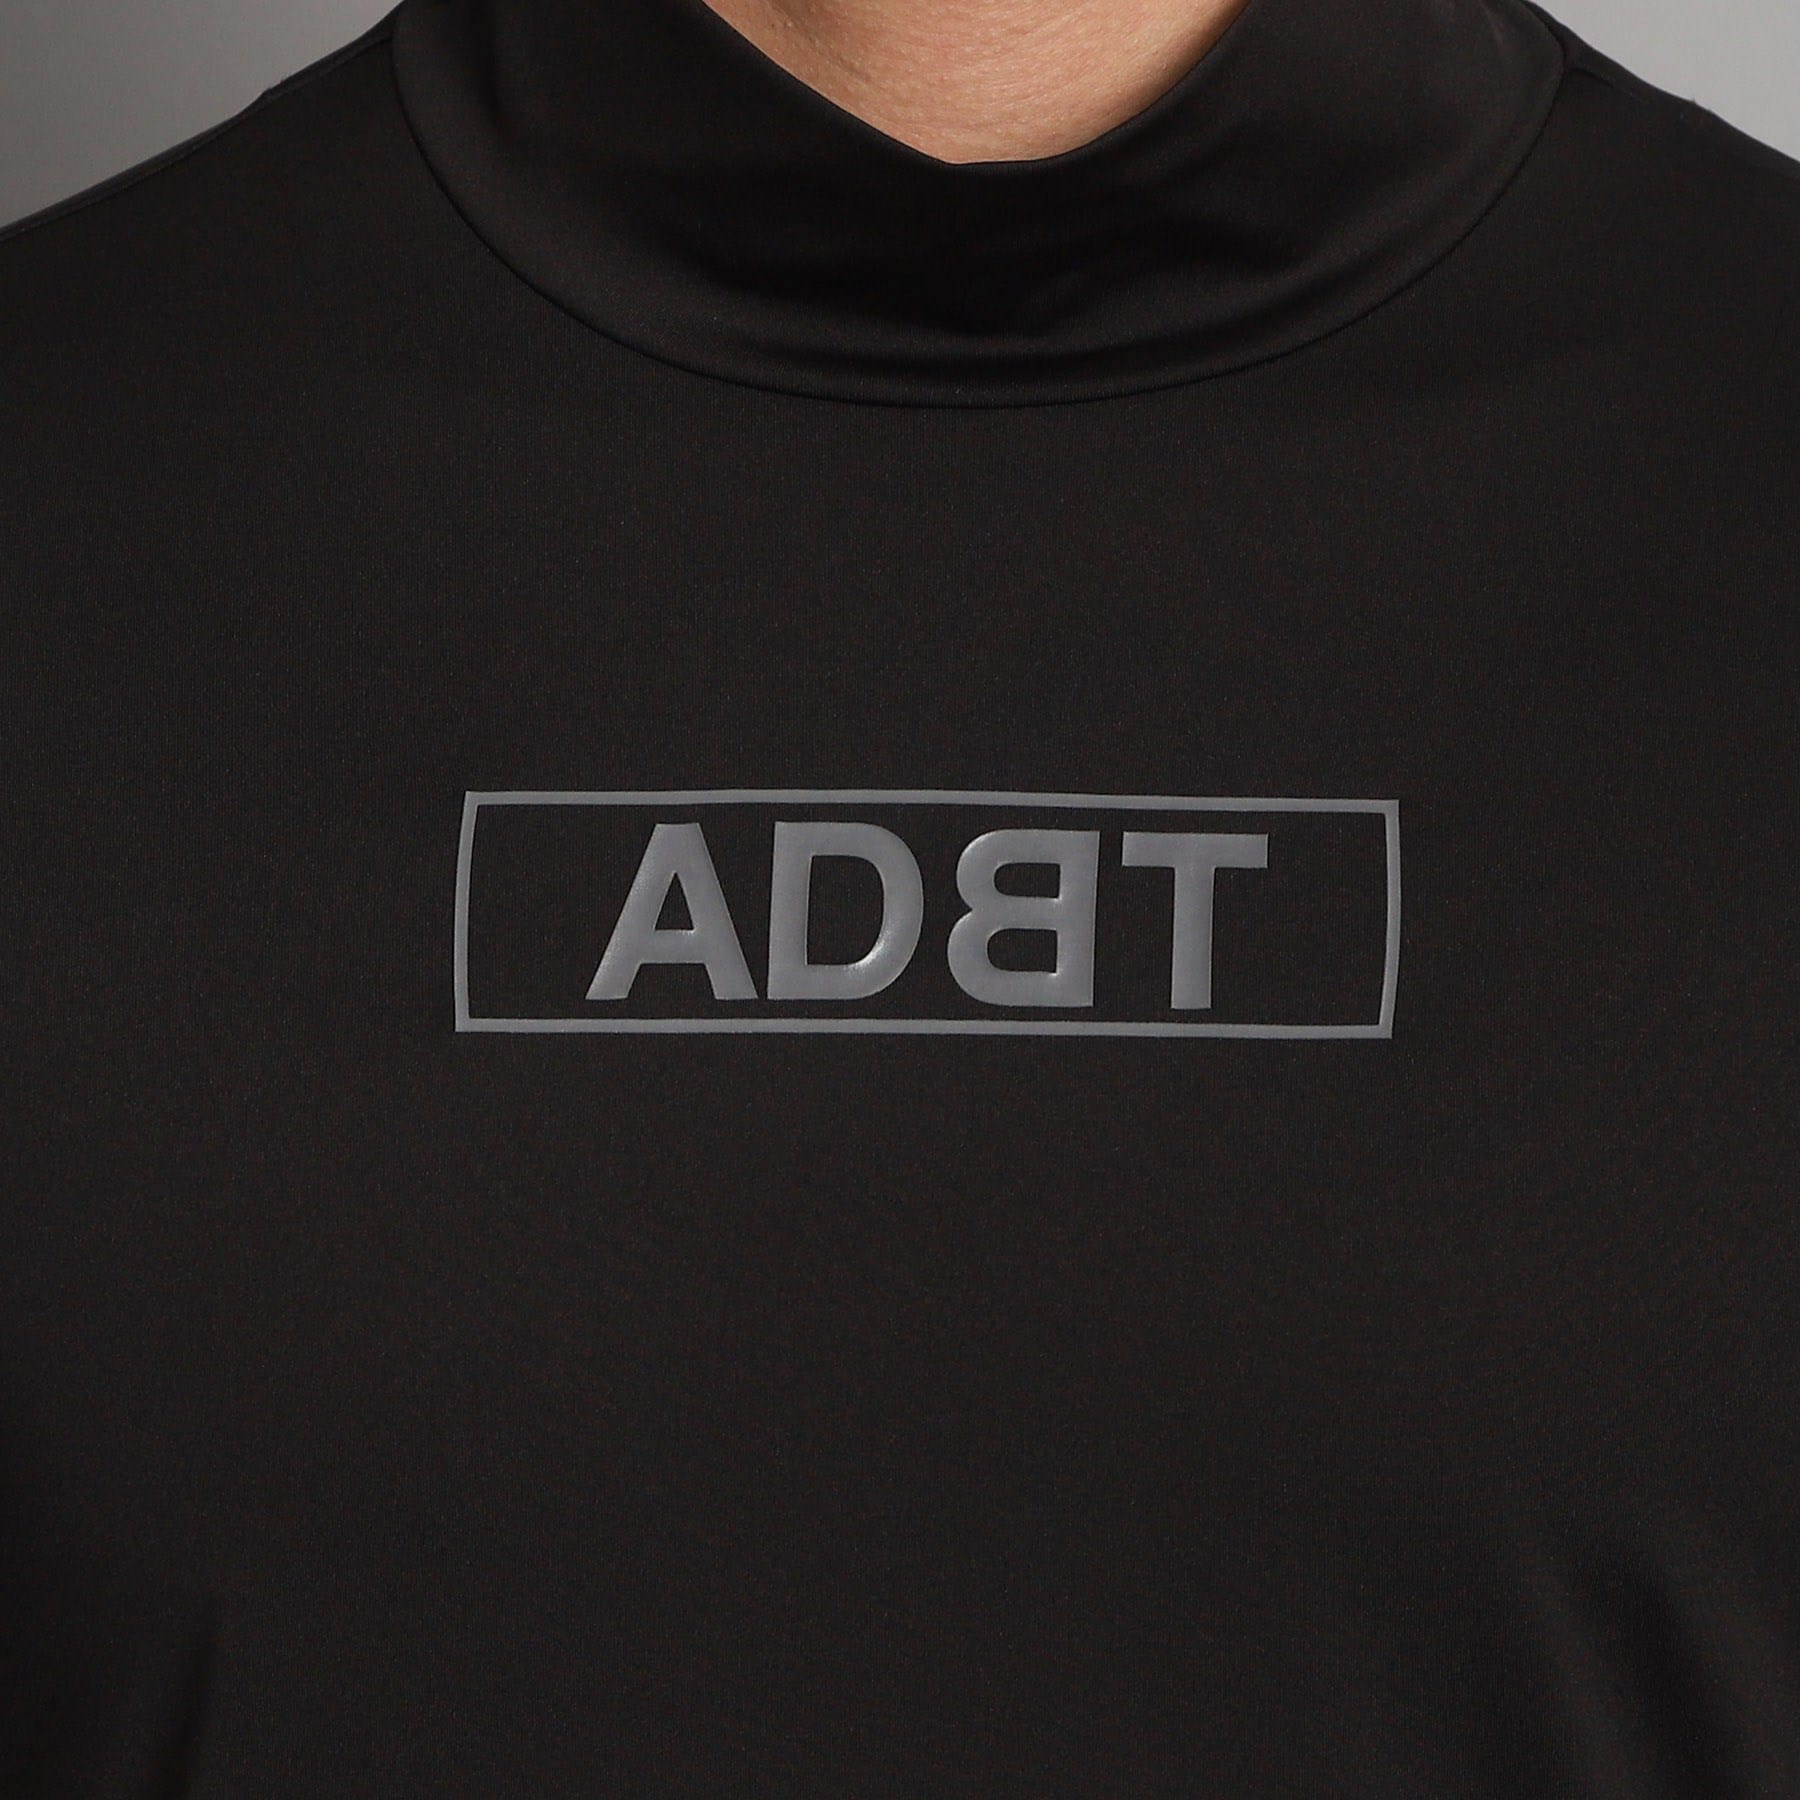 アダバット(メンズ)(adabat(Men))のロゴデザイン モックネック長袖プルオーバー12